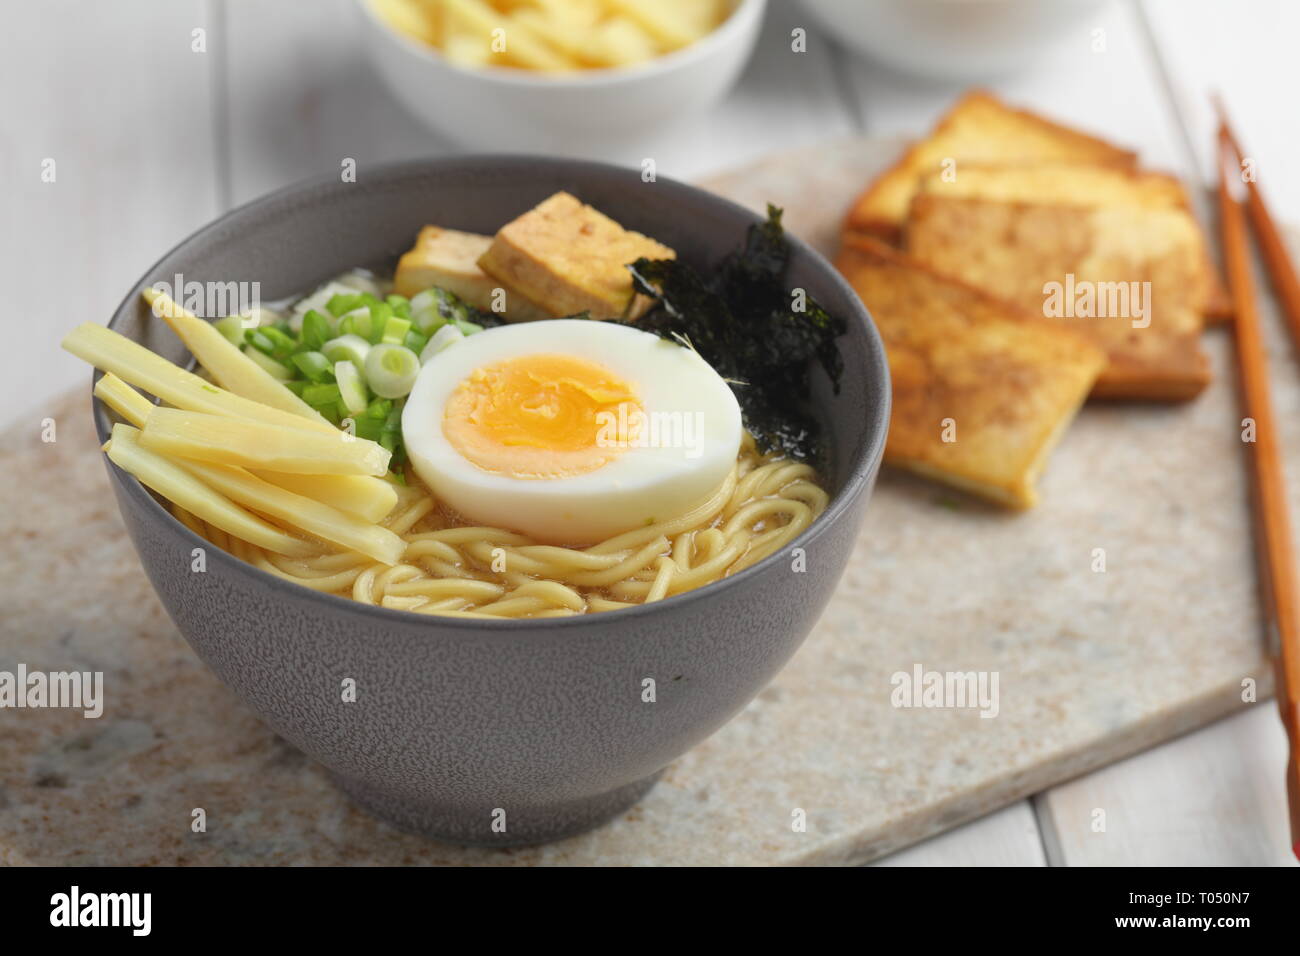 Soupe aux nouilles avec oeuf oeuf mollet, pousses de bambou, du tofu frit, oignon vert, et nori Banque D'Images